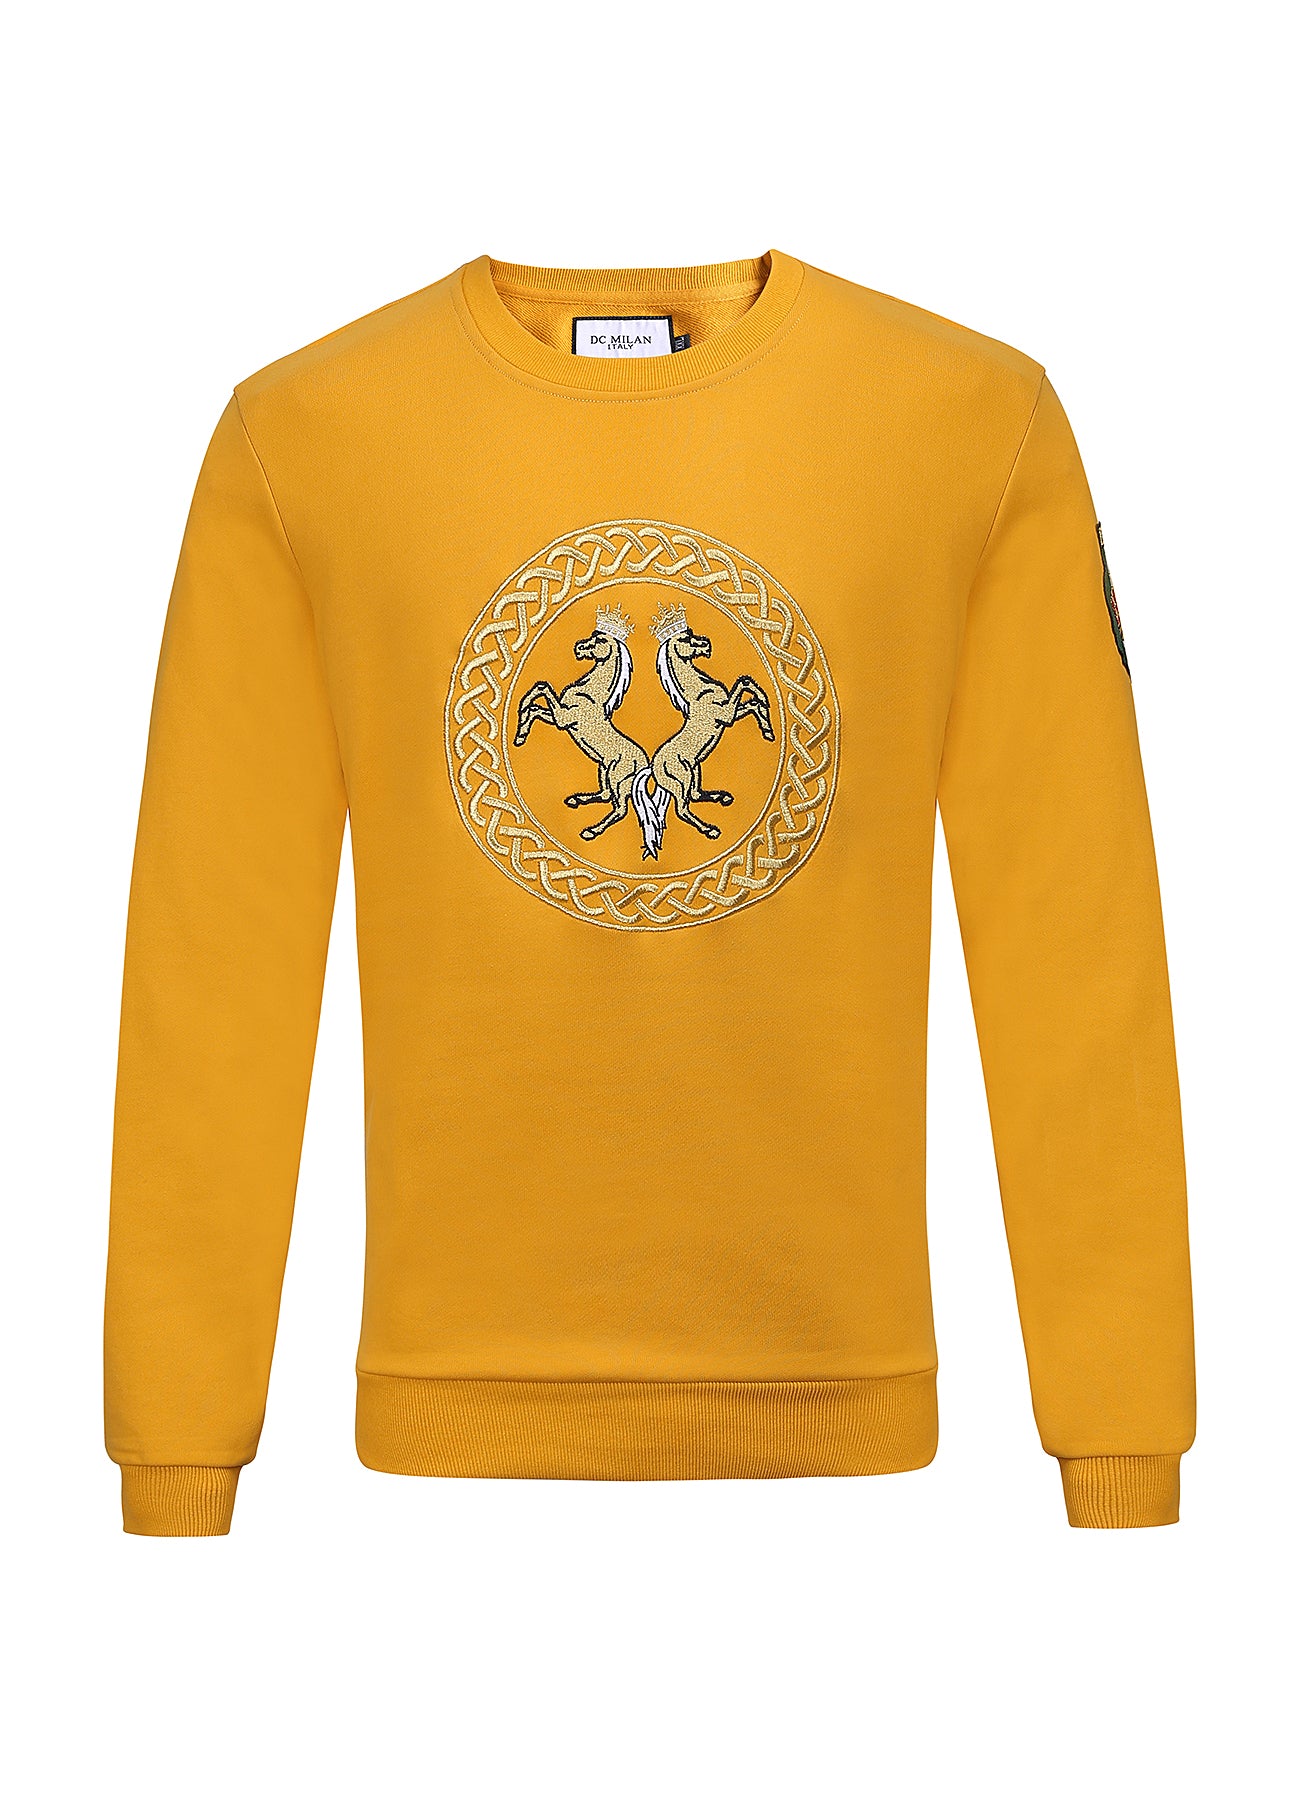 Embroidery Yellow Cotton Sweatshirt With Big Logo